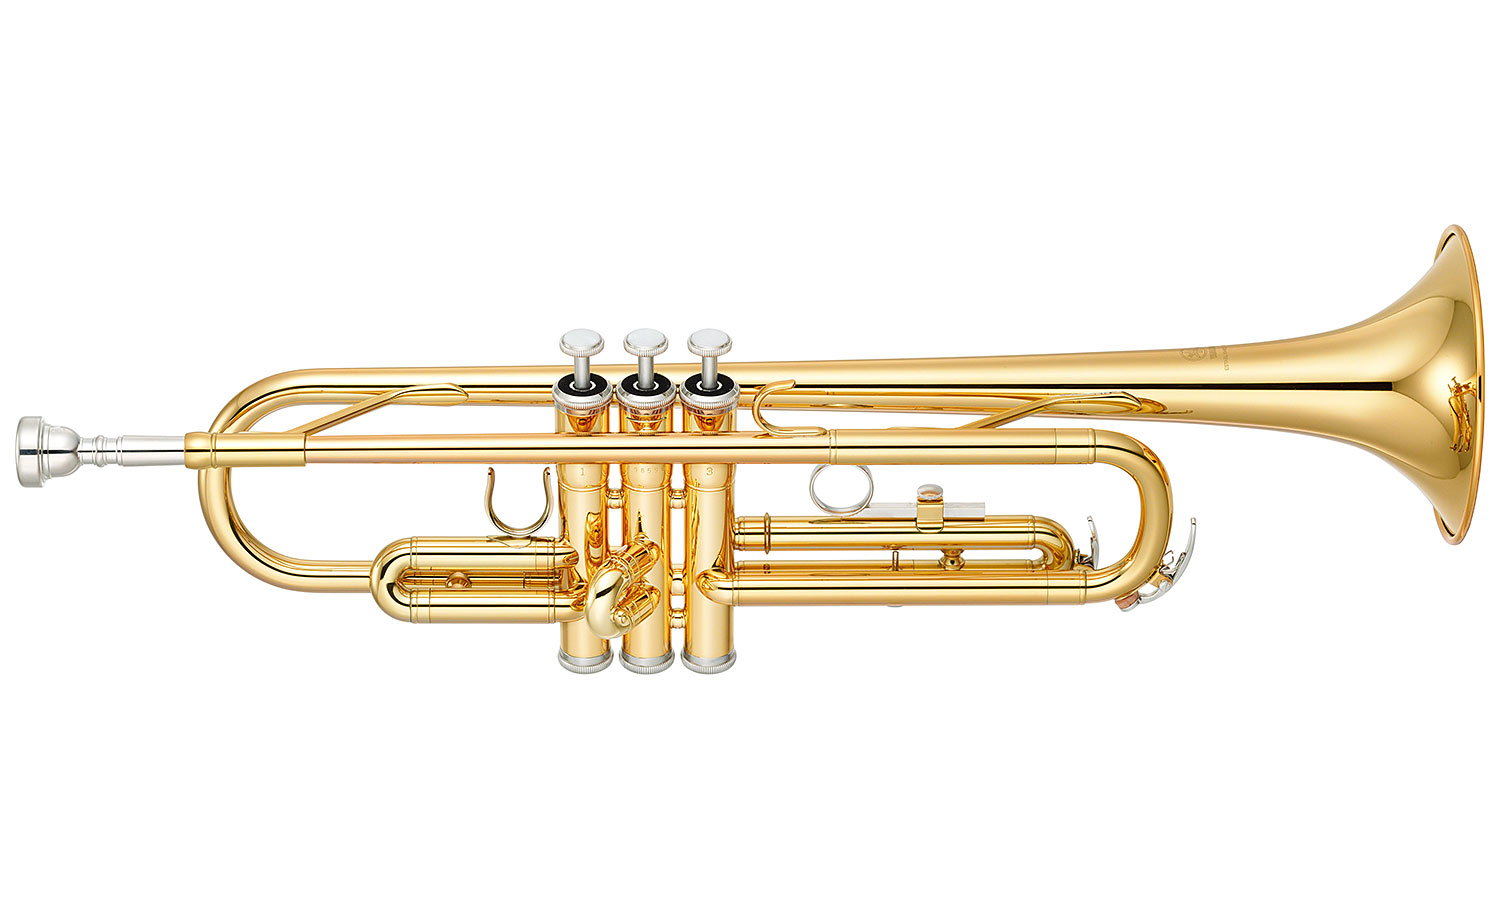 Yamaha Ytr-2330 + Korg Ma1 + Rtx Mscx + Power Lm20 - Trumpet of study - Variation 1